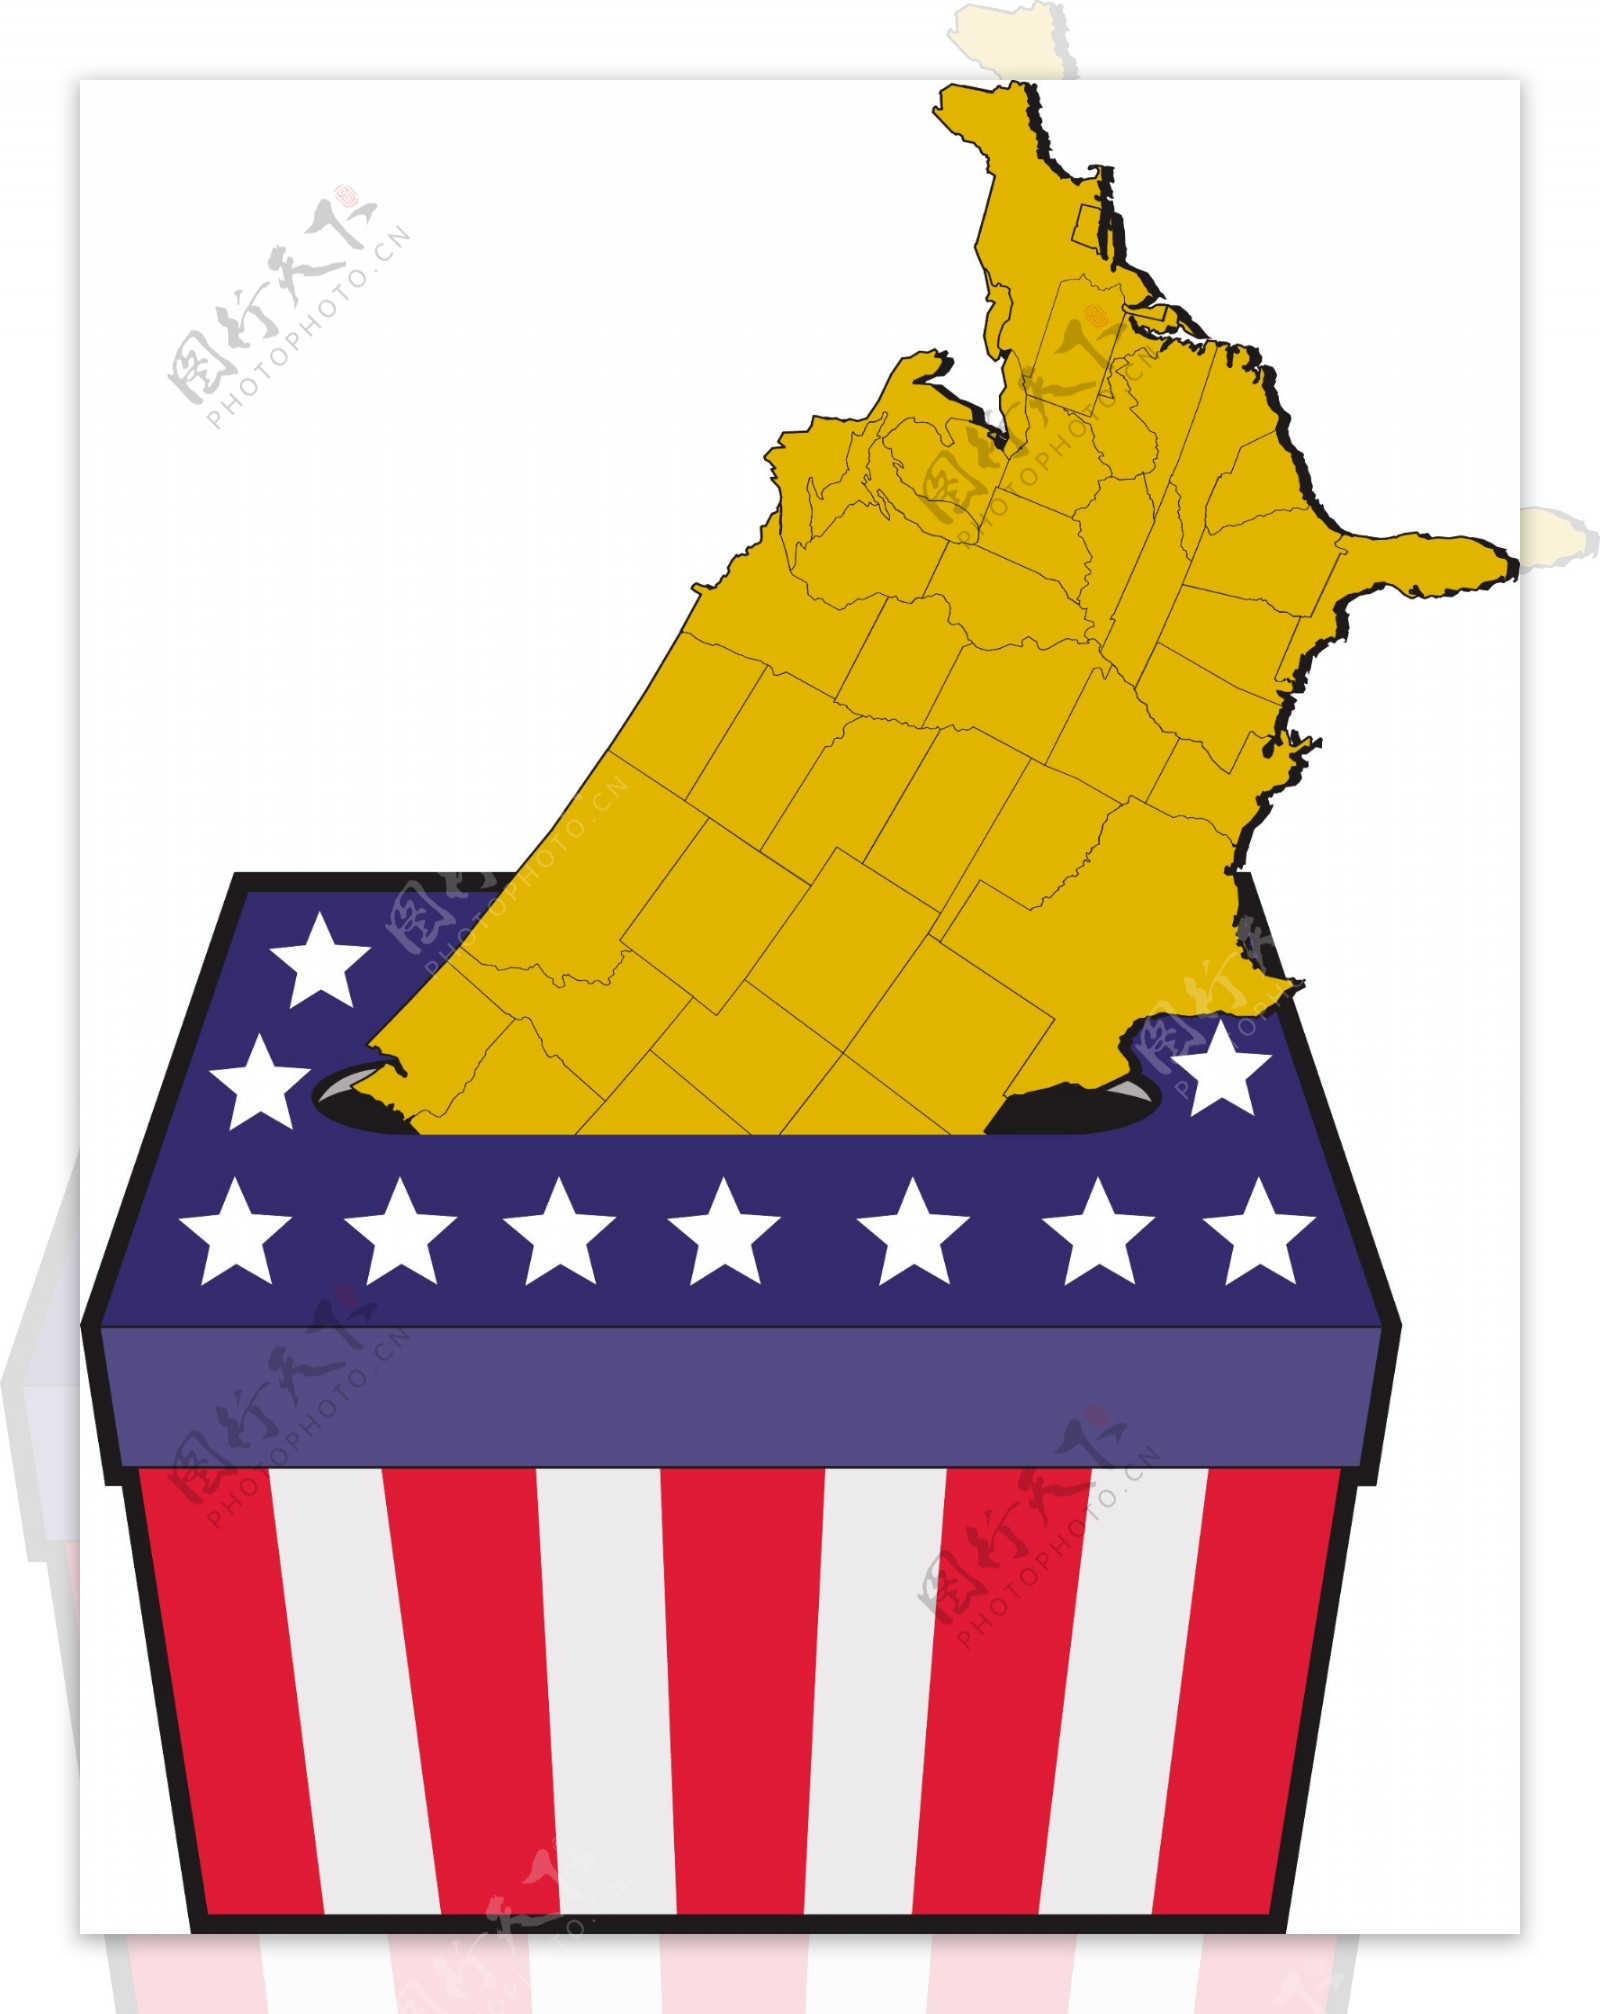 美国大选投票箱美国地图